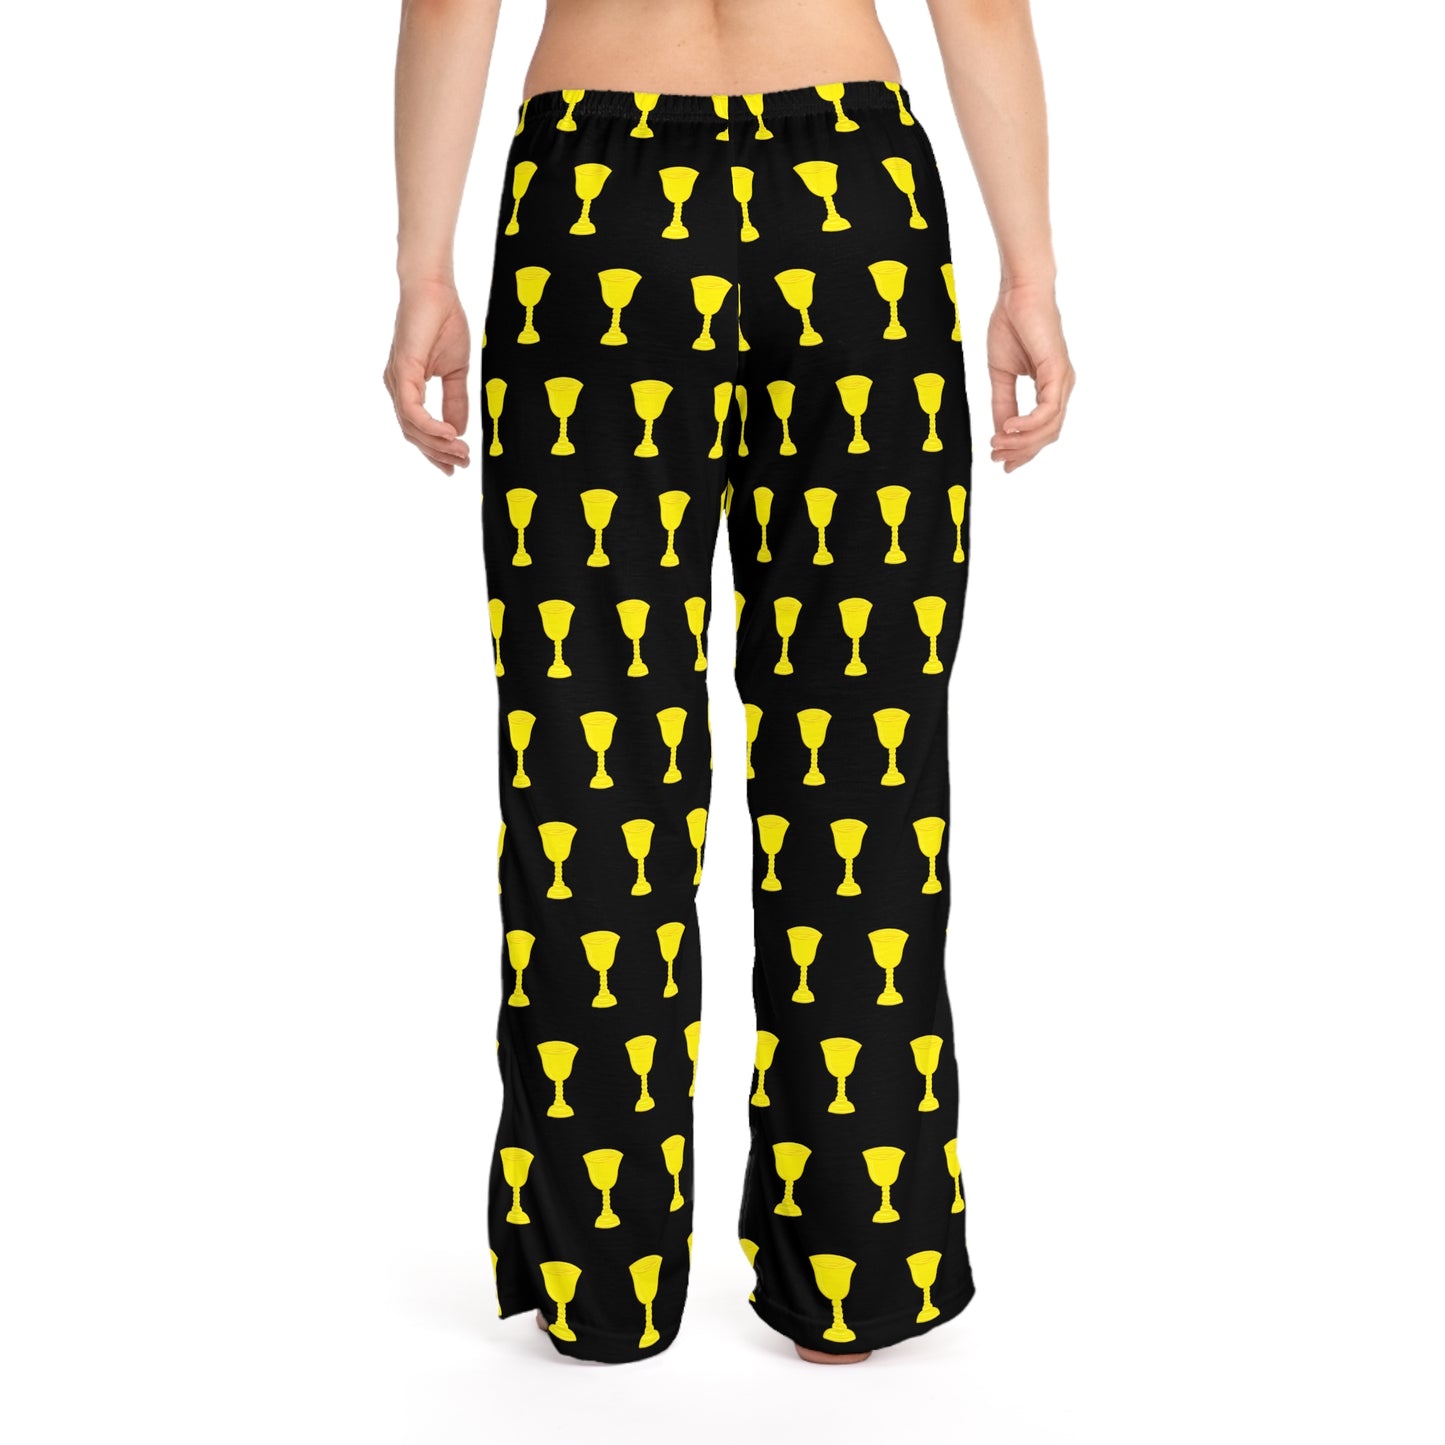 Tarot Pajama Pants - Suit of Cups